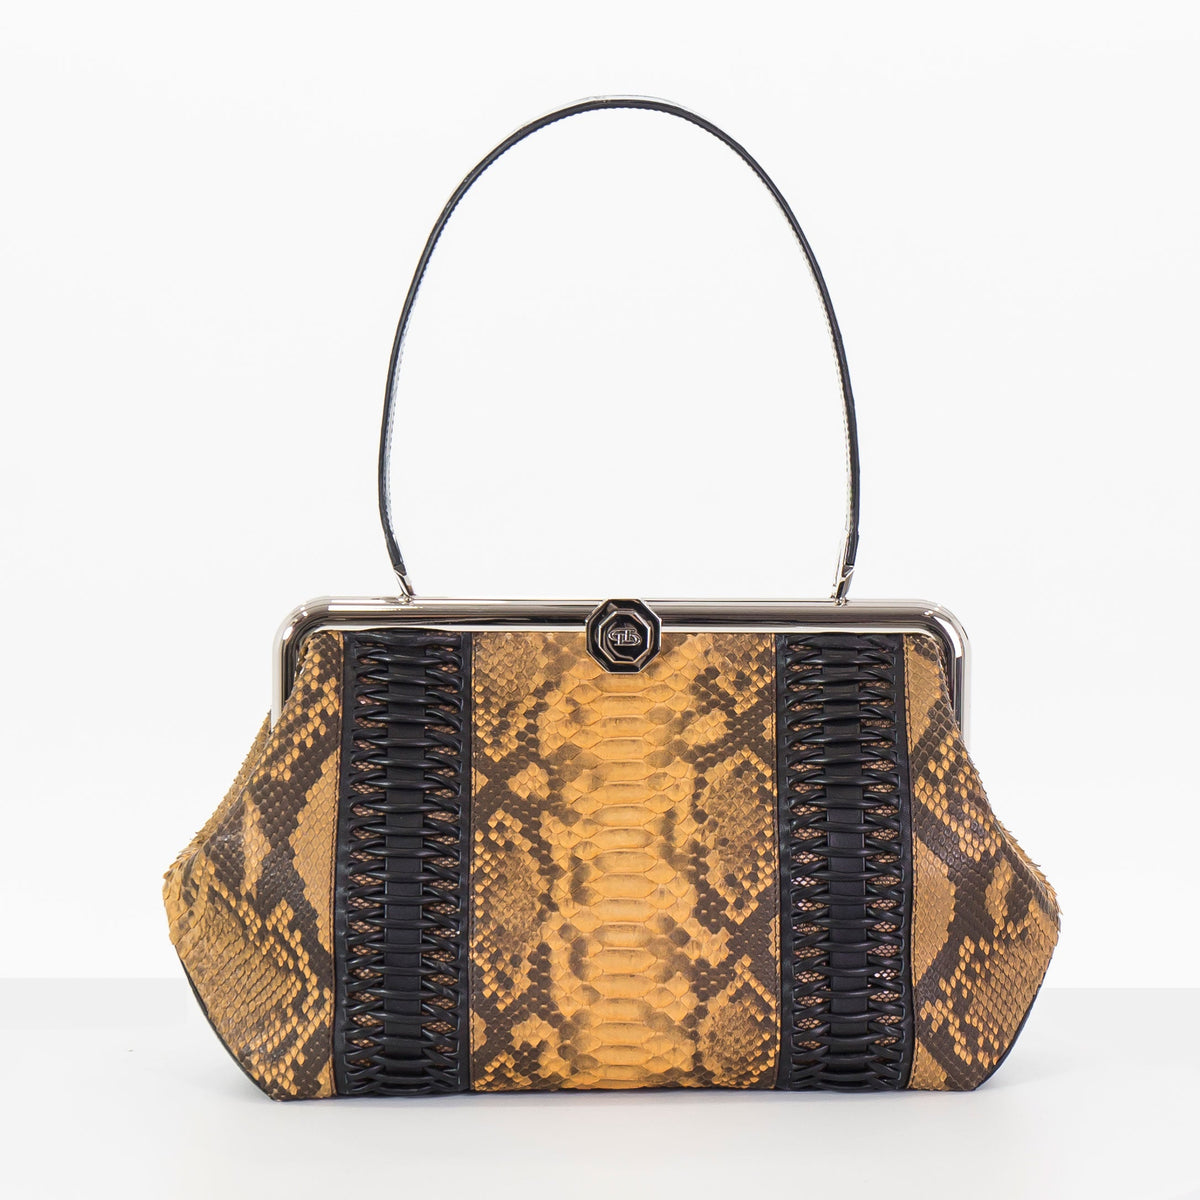 LUNA in Okra Python, Ostrich, Alligator and Karung-DOTTI Luxury Handbag. Made in Italy